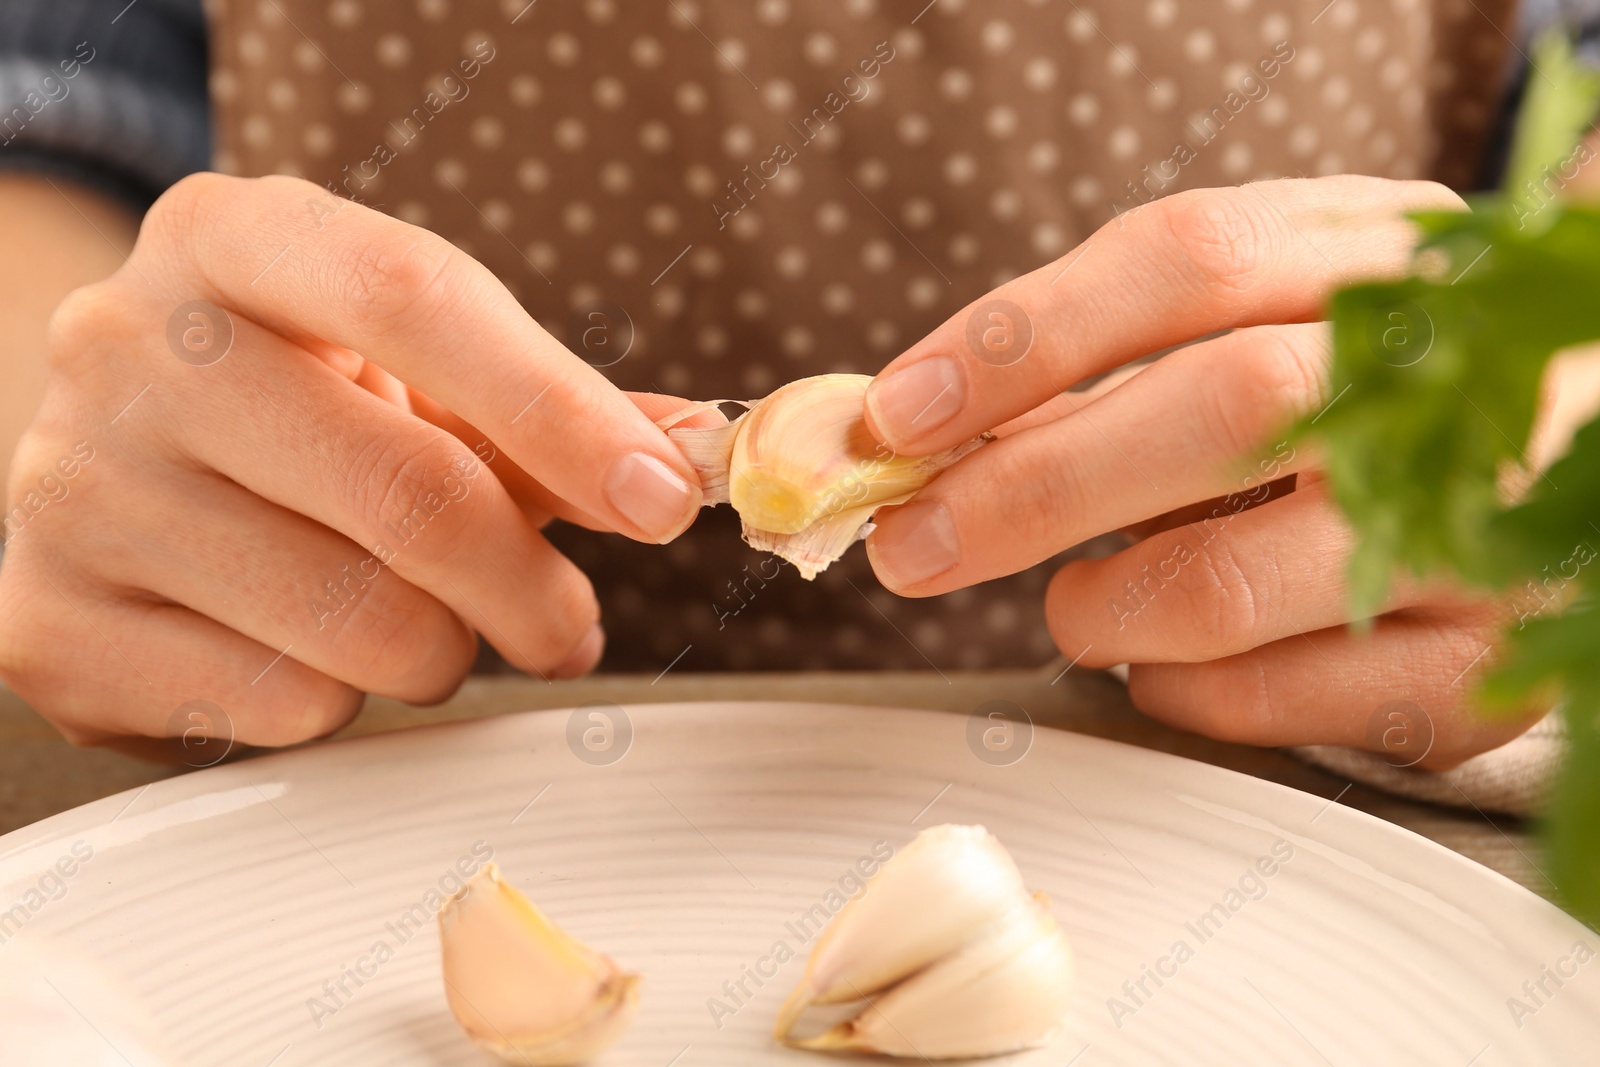 Photo of Woman peeling fresh garlic at table, closeup